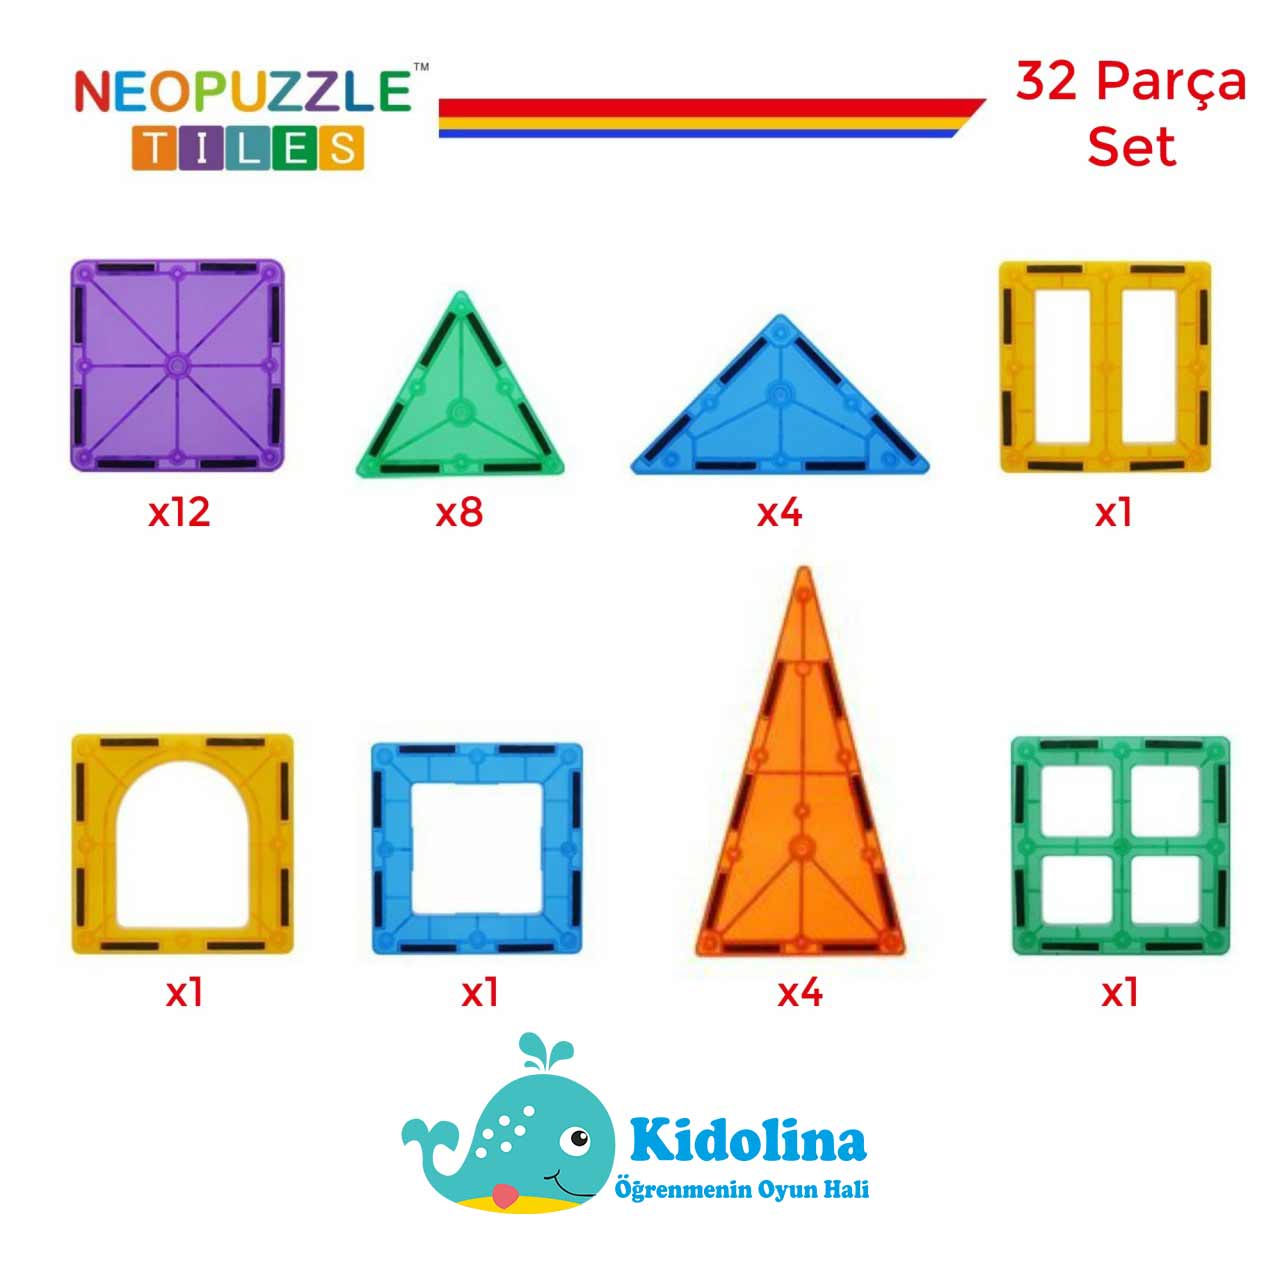 neopuzzle_tiles_32_parca_icerik